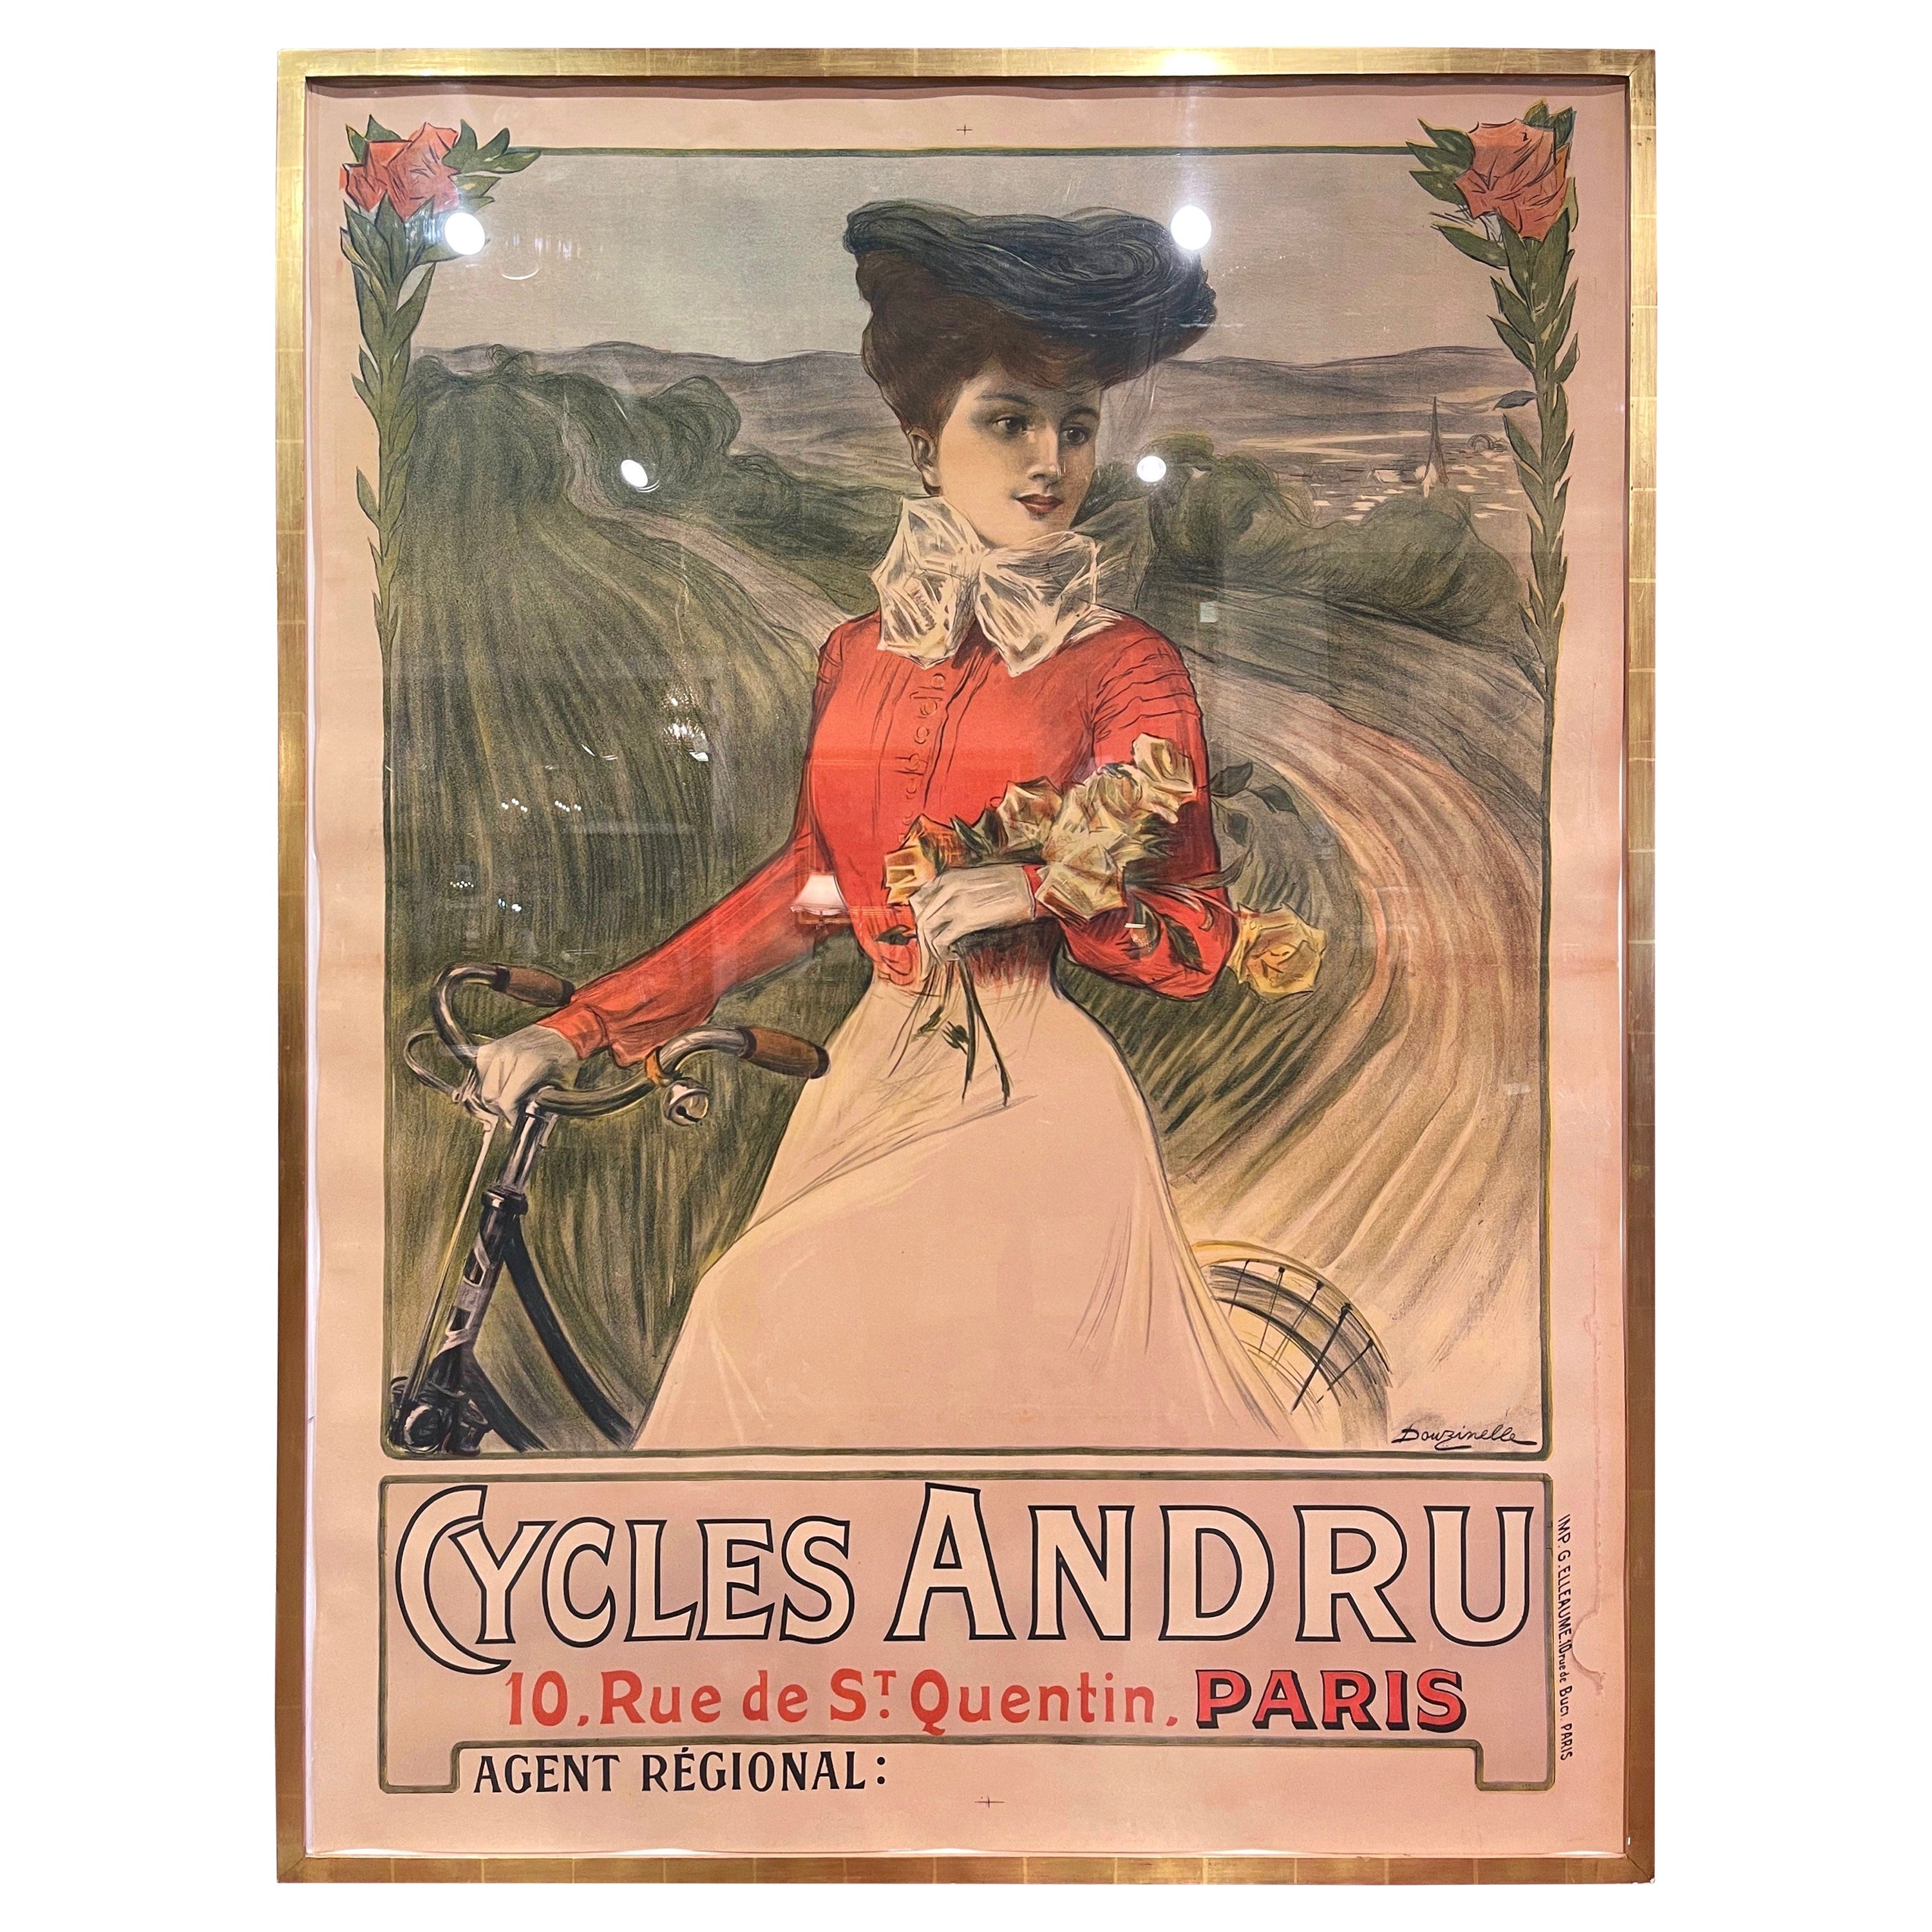 Französisches Vintage-Poster „Cycles Andru“ aus dem späten 19. Jahrhundert